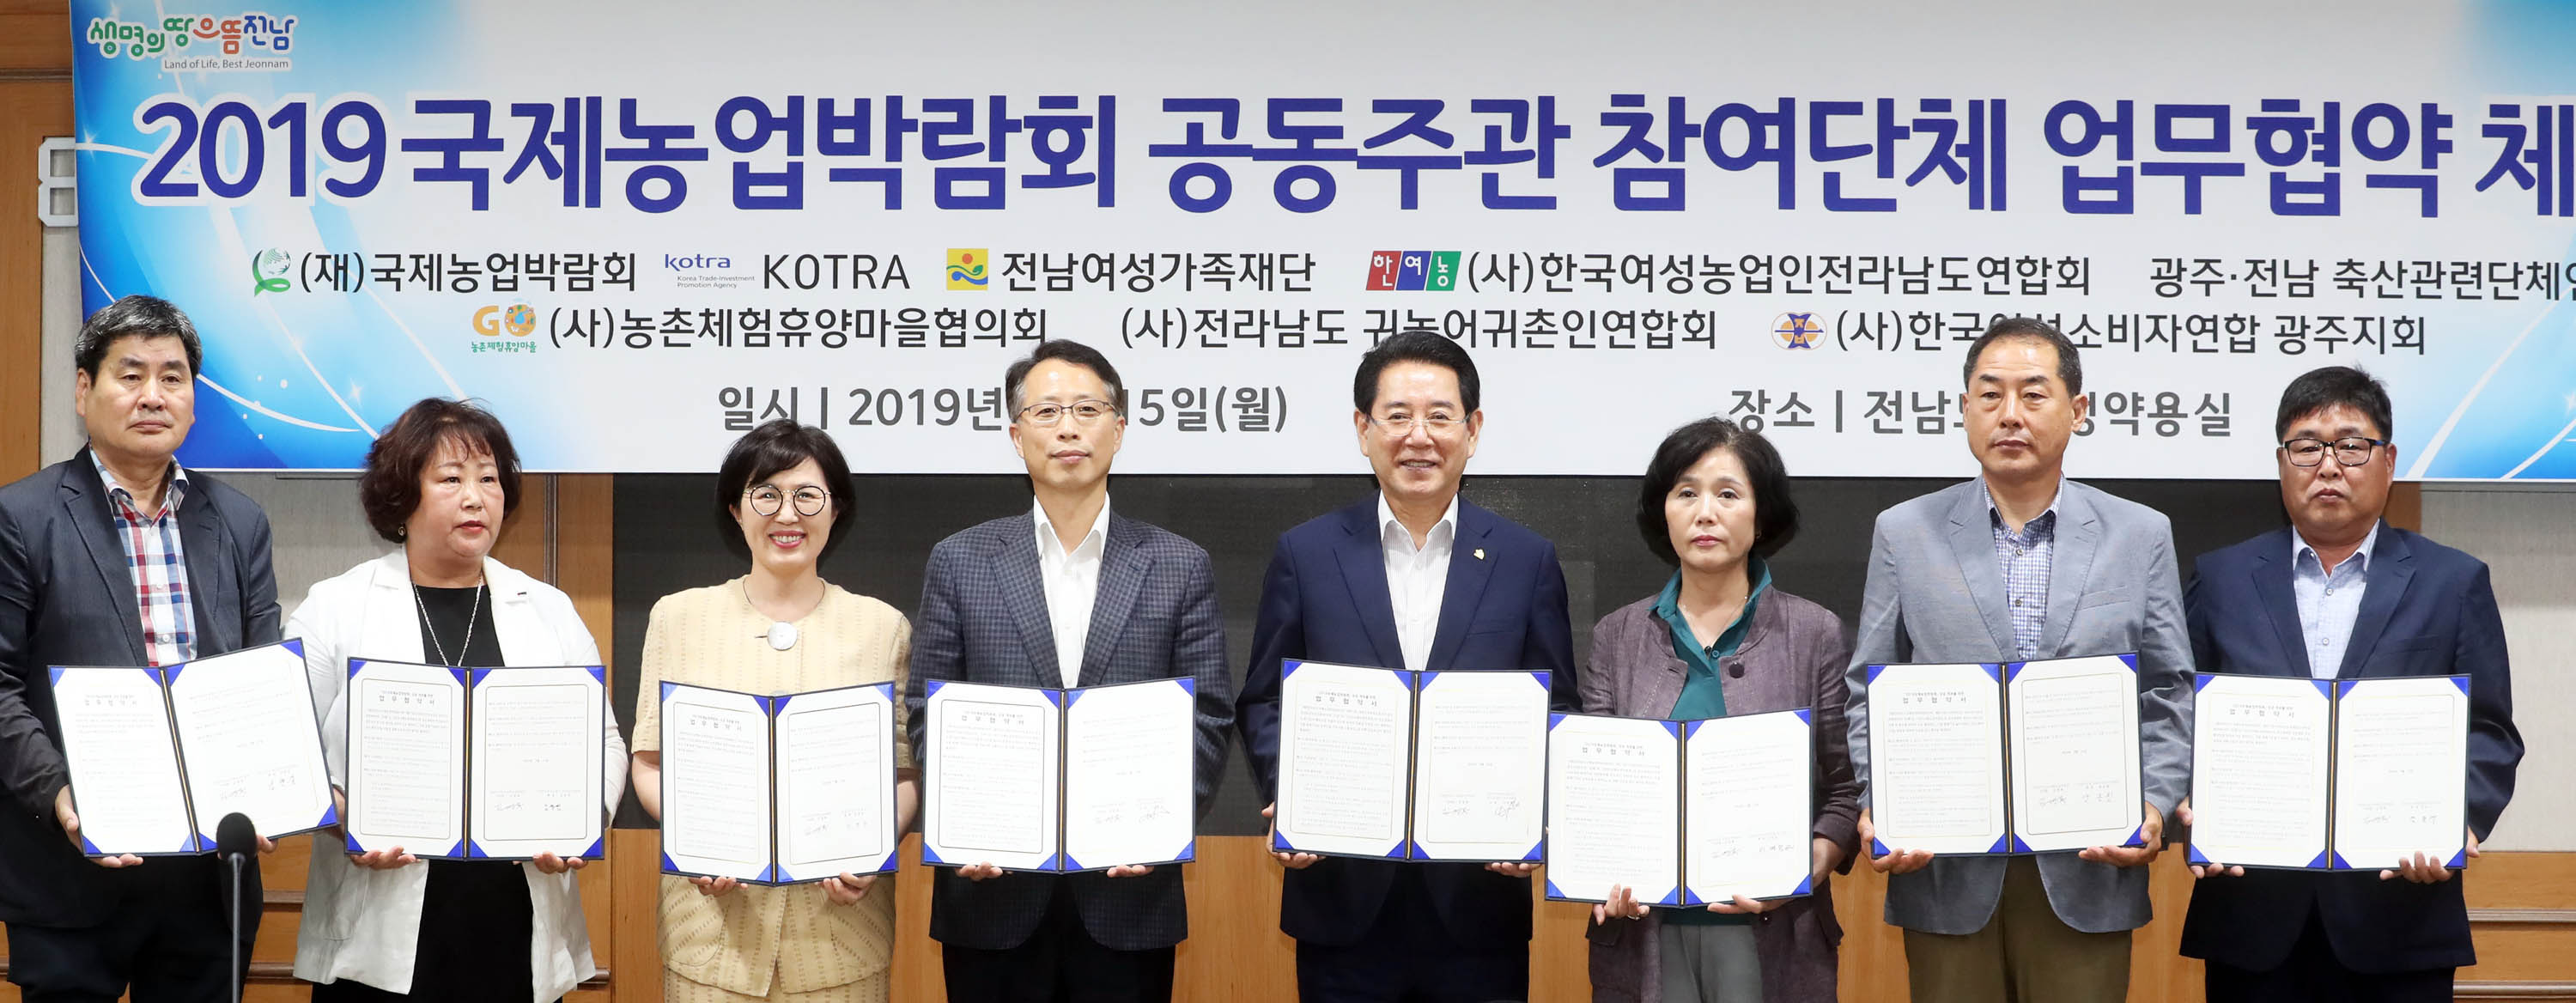 2019국제농업박람회 성공 개최를 위한 업무협약1